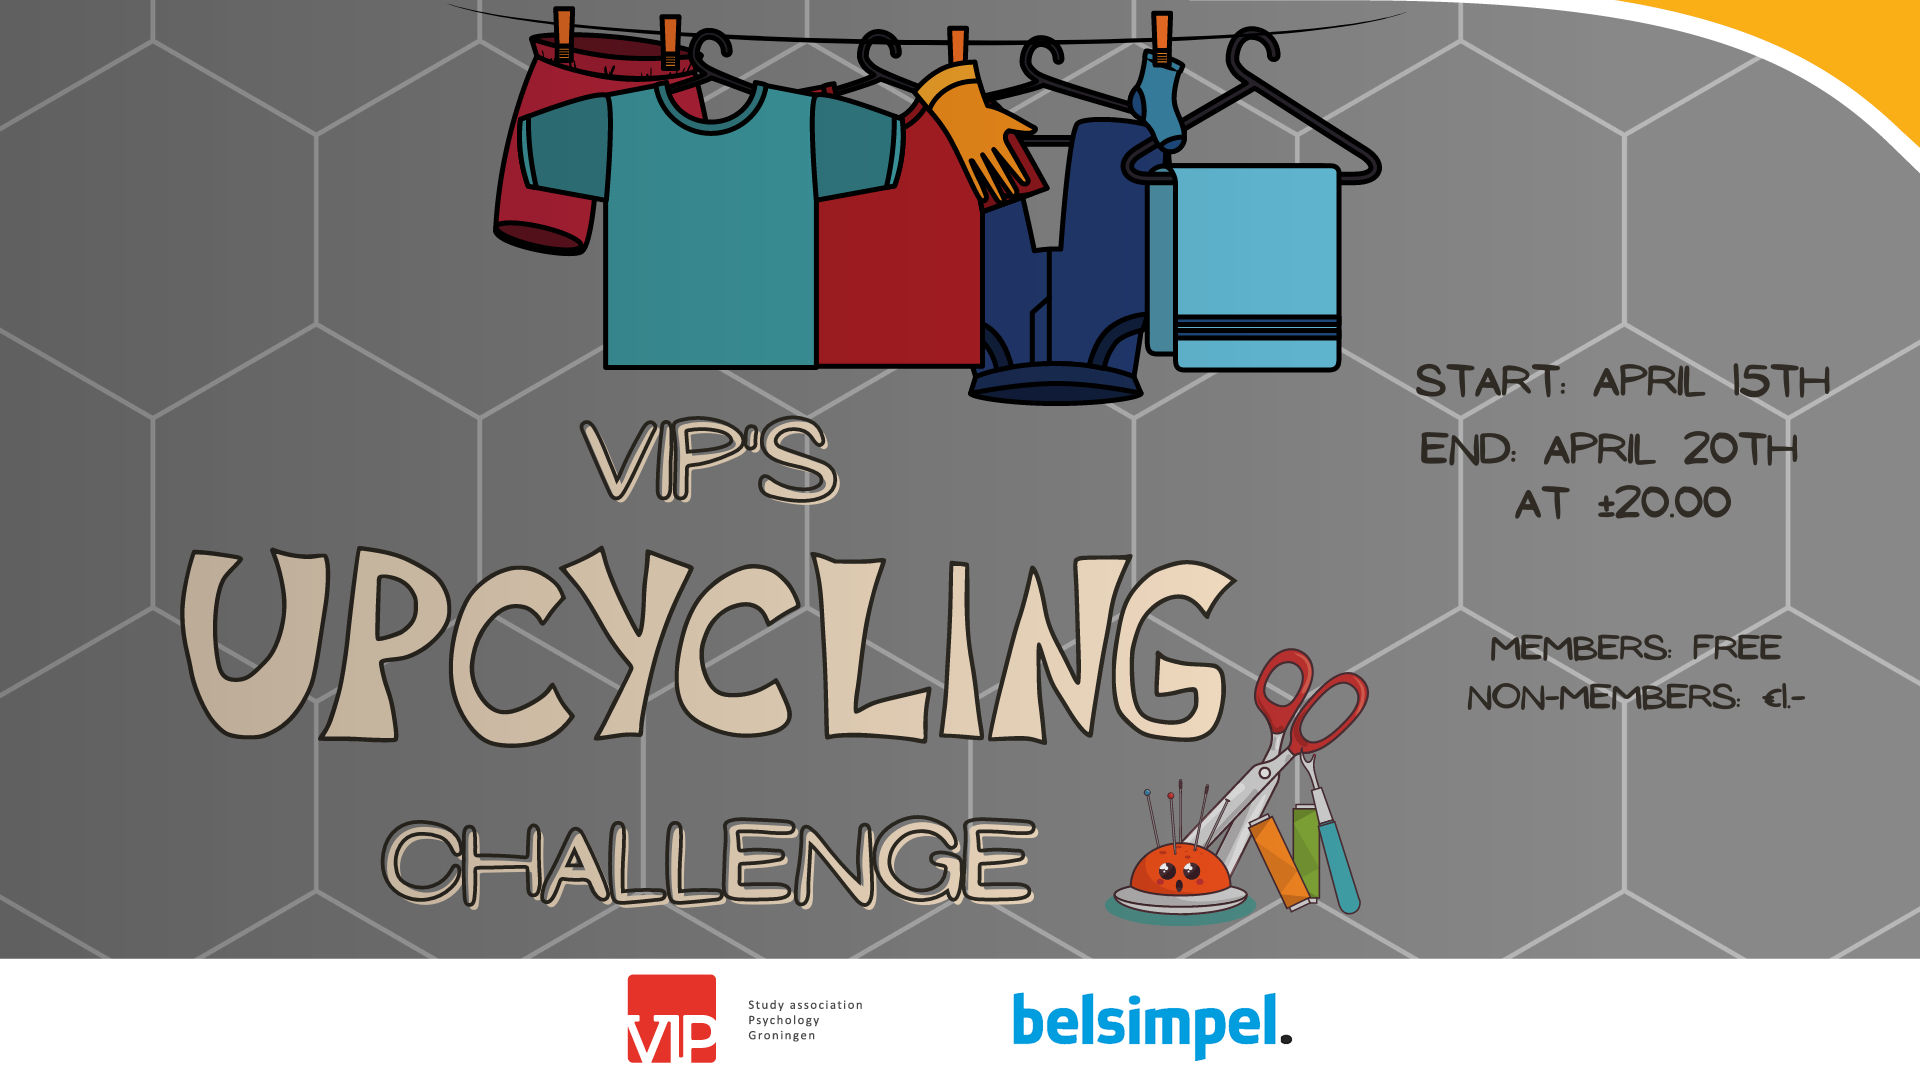 VIP: Upcycling challenge